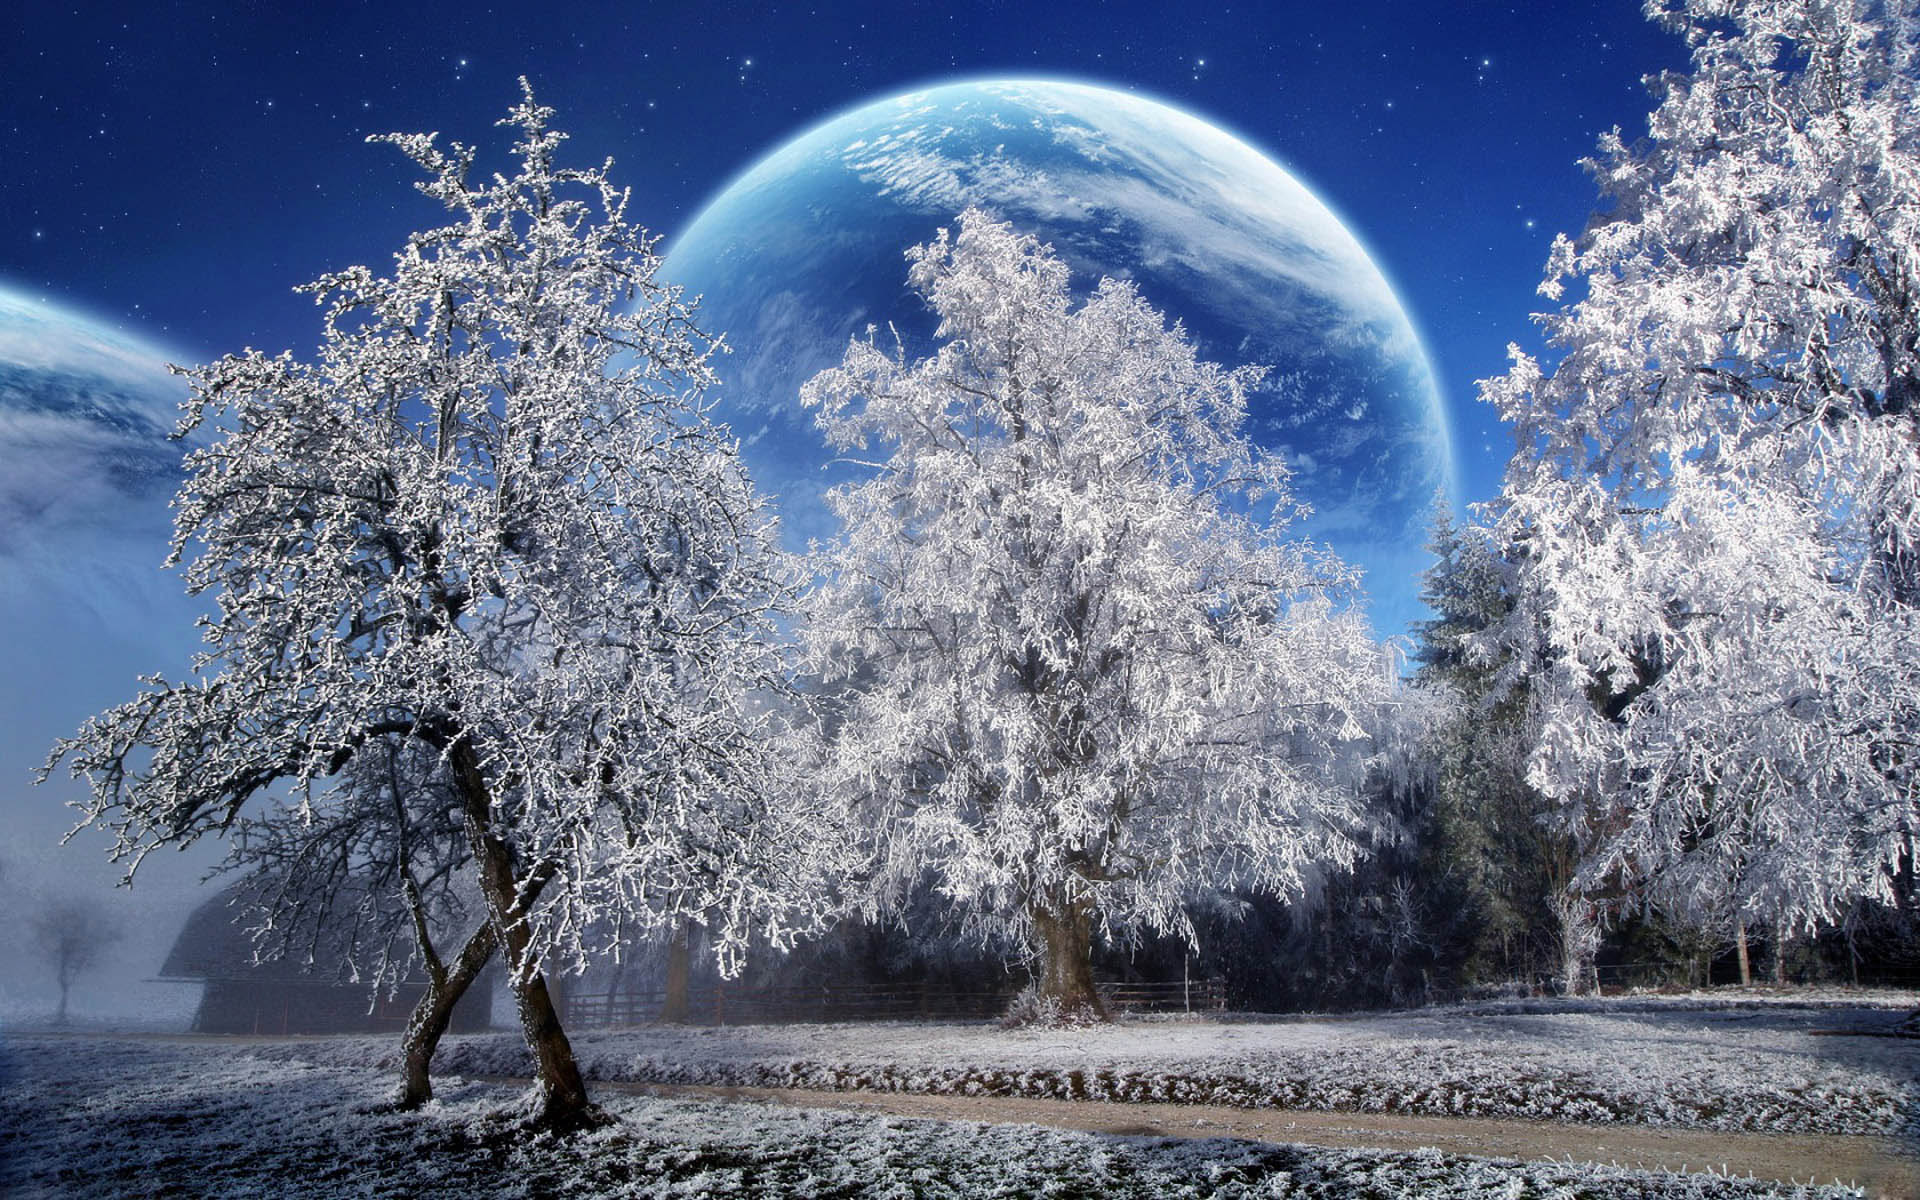 Snowy winter scenery in high definition desktop wallpaper.